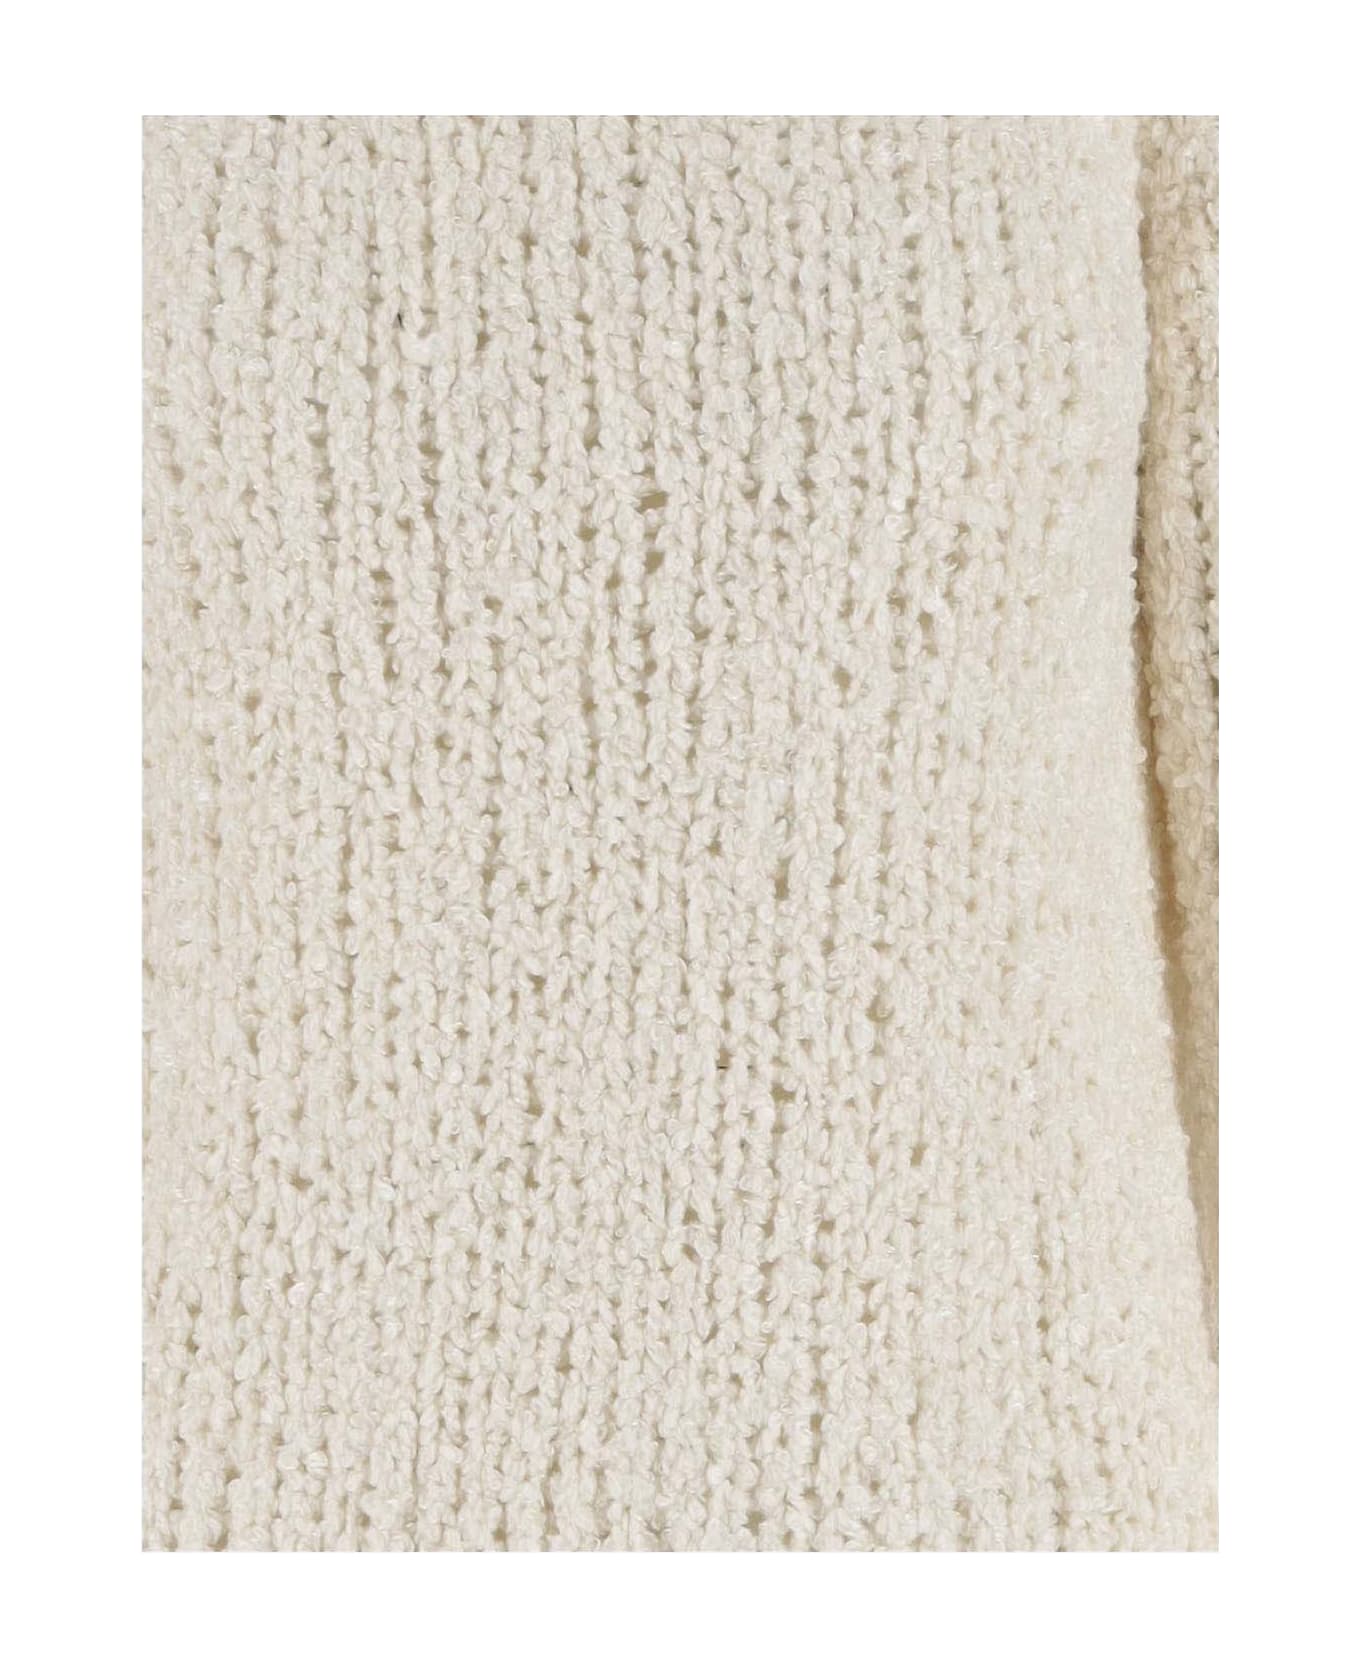 Wild Cashmere Silk Sweater - Ivory